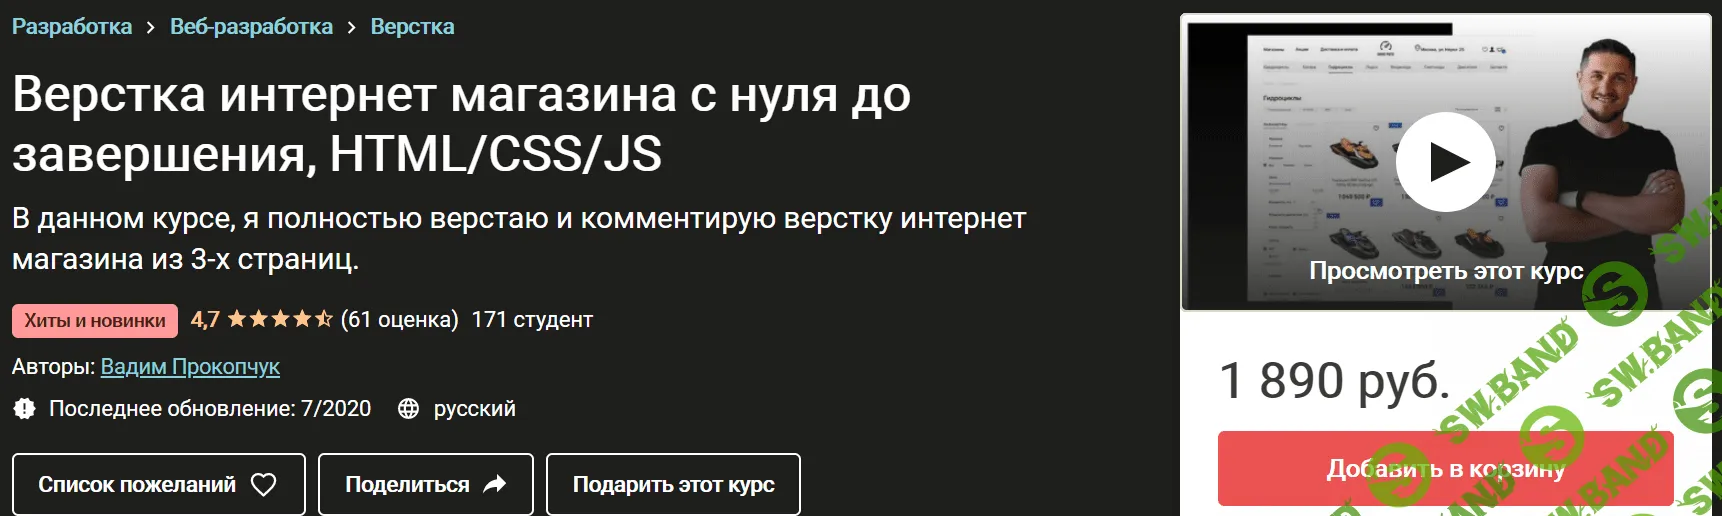 [Udemy] [Вадим Прокопчук] Верстка интернет магазина с нуля до завершения, HTML/CSS/JS (2020)